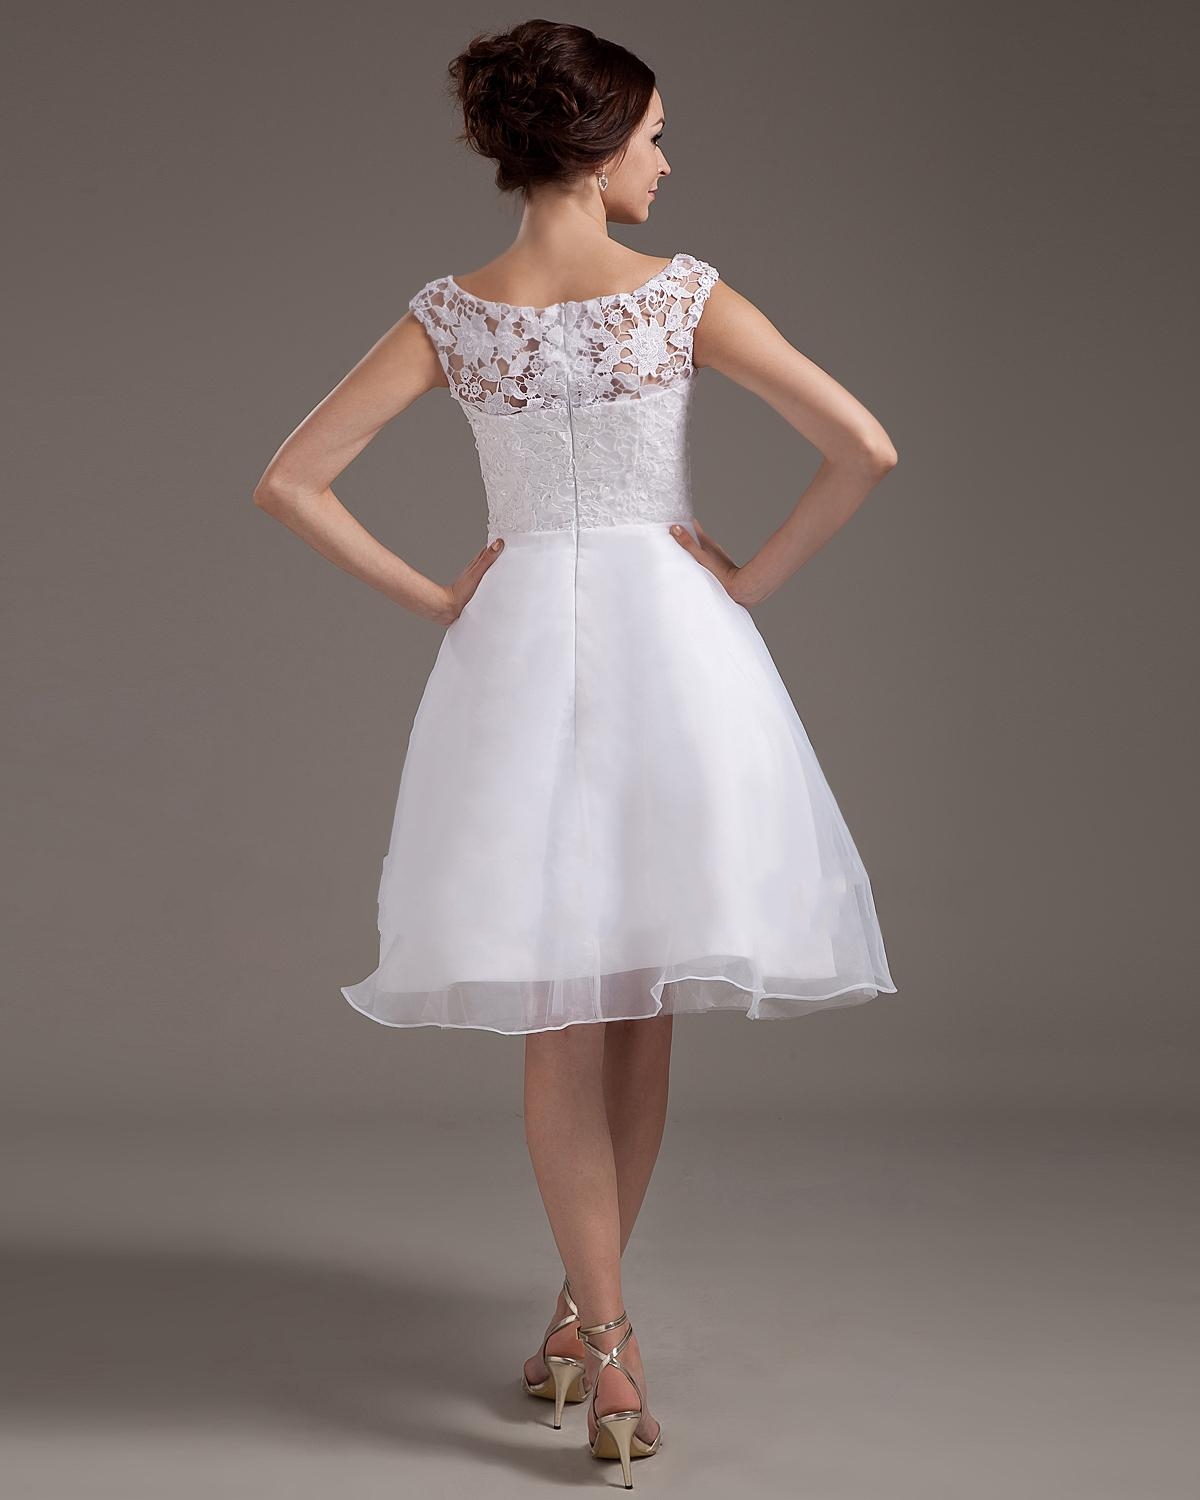 Short White Lace Wedding Dresses